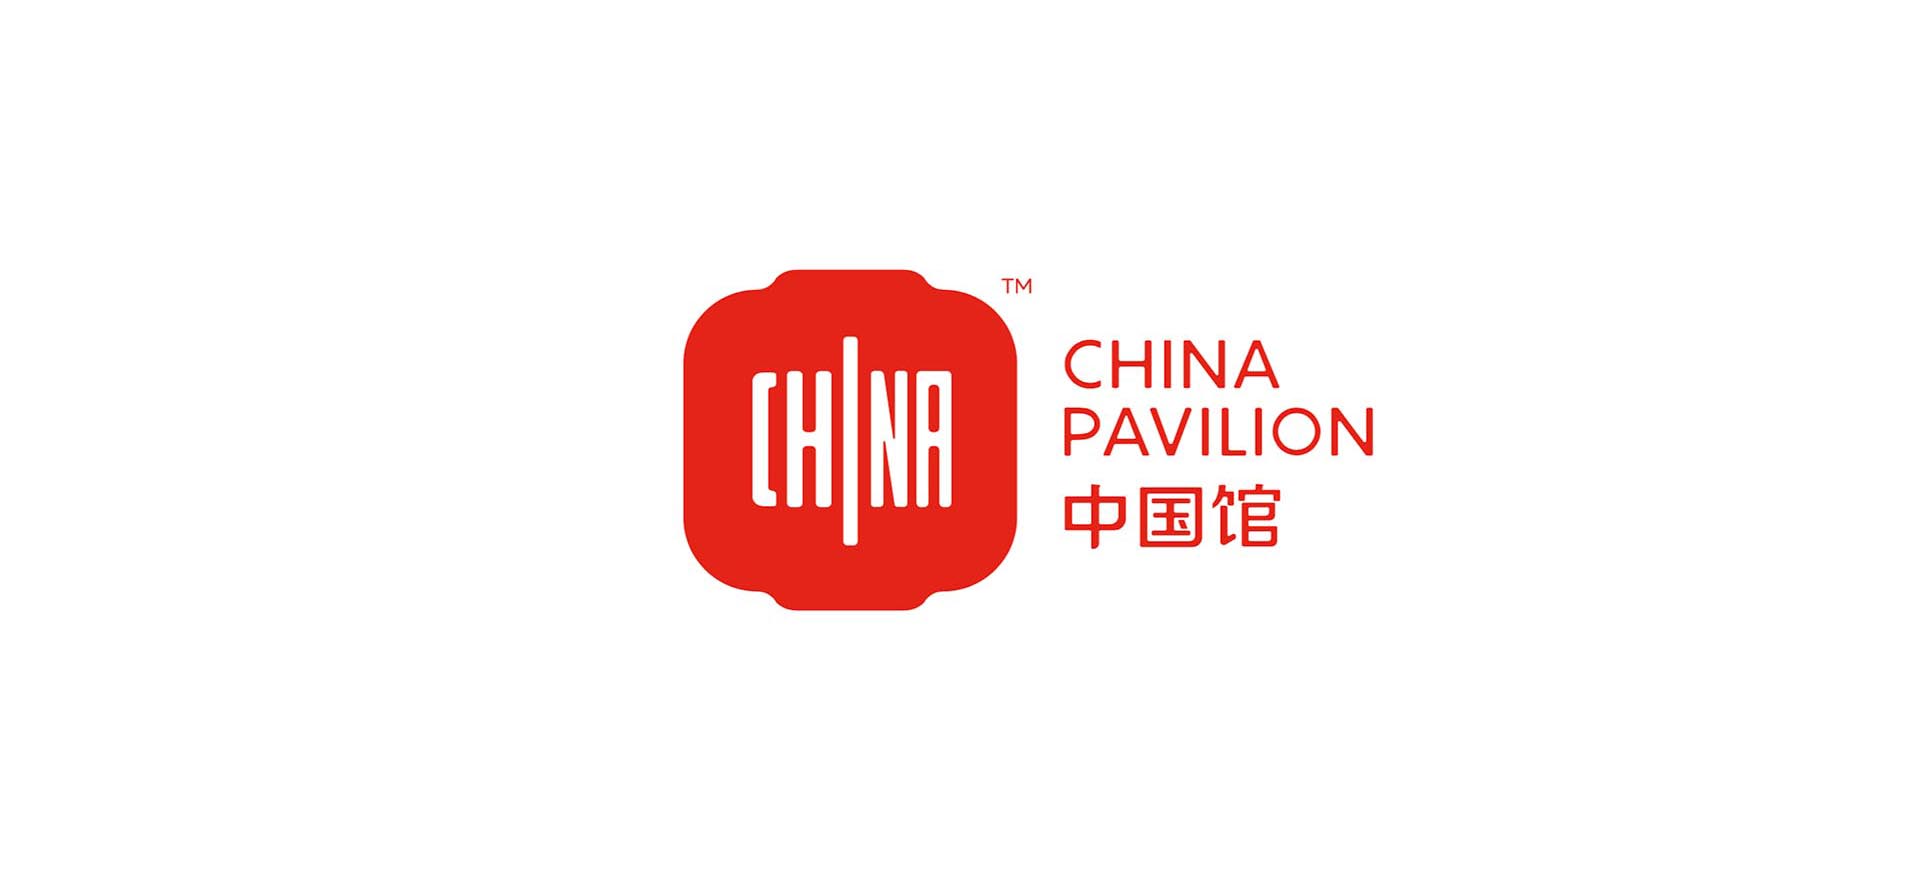 2020世博会中国馆logo图片